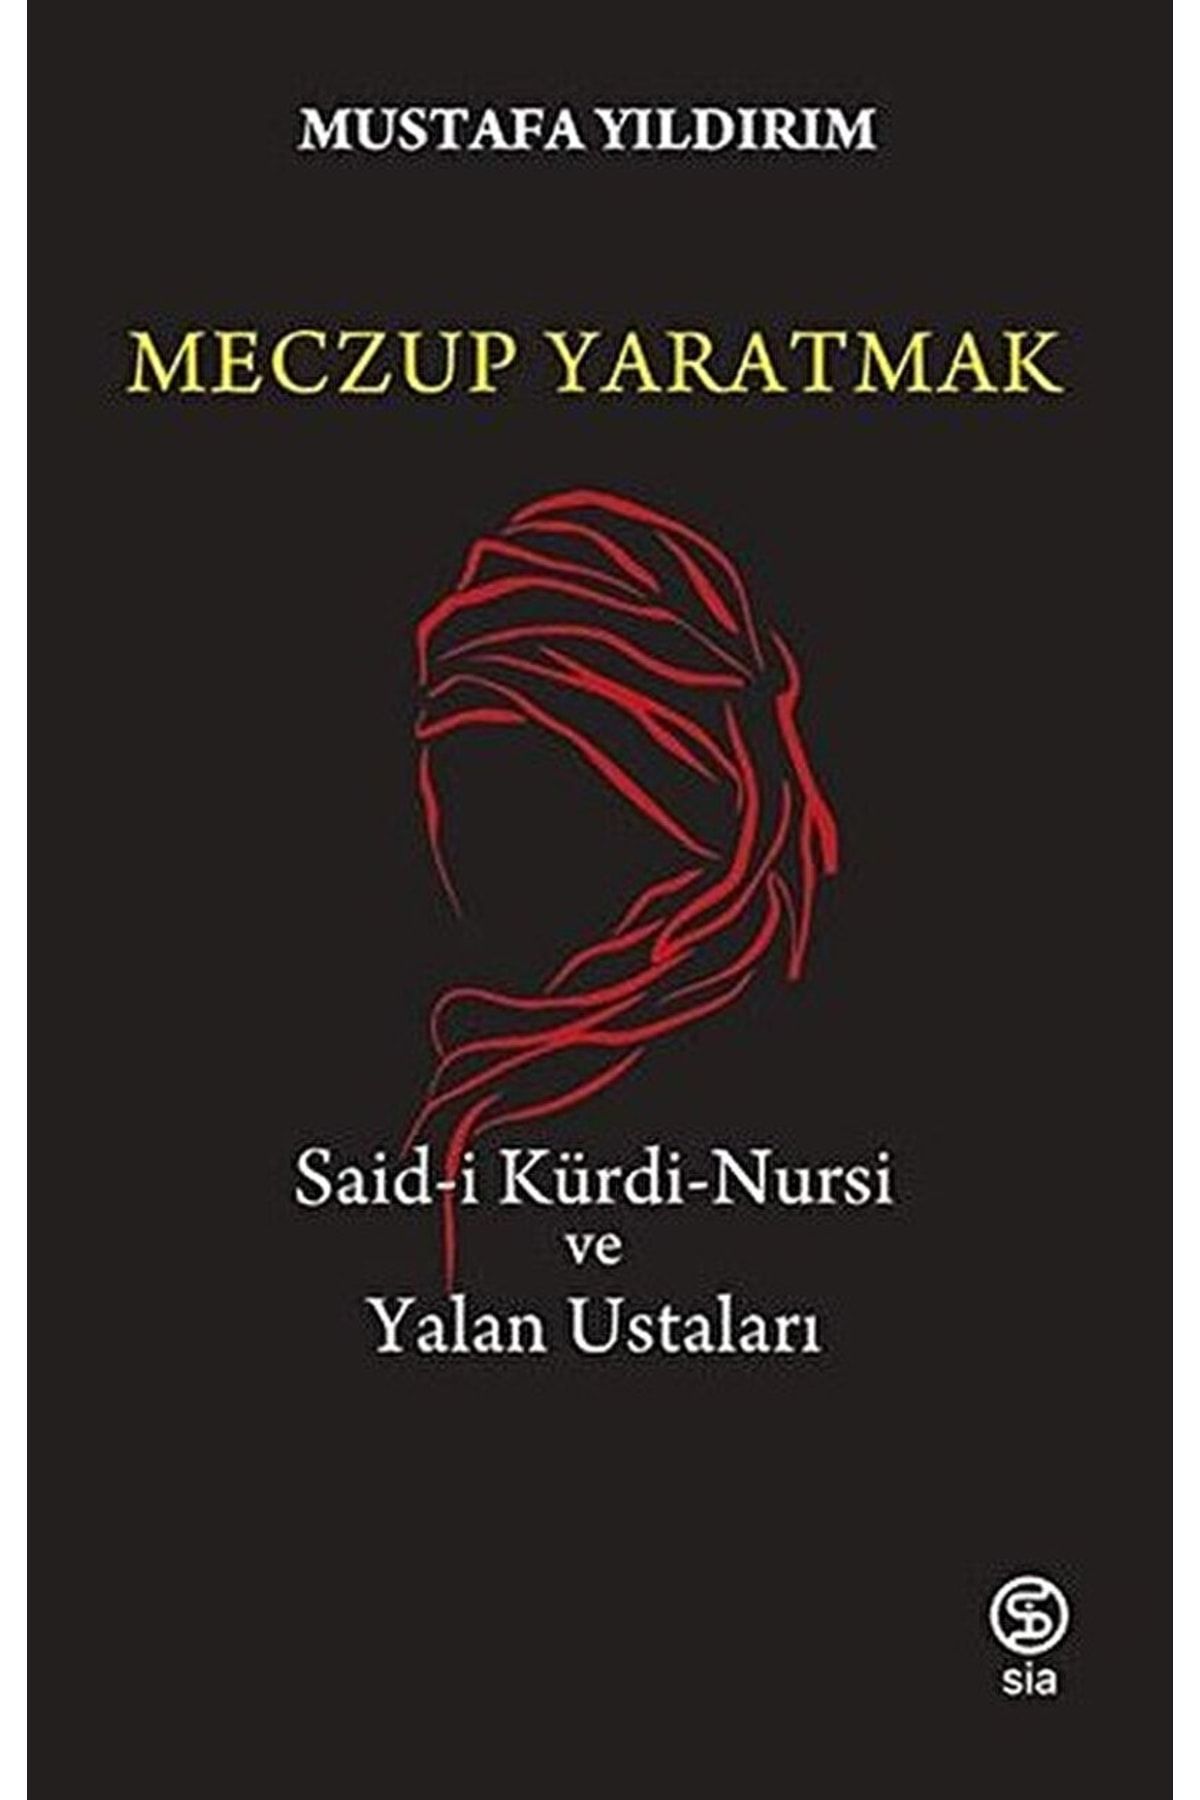 Sia Kitap Meczup Yaratmak / Mustafa Yıldırım / / 9786258129519